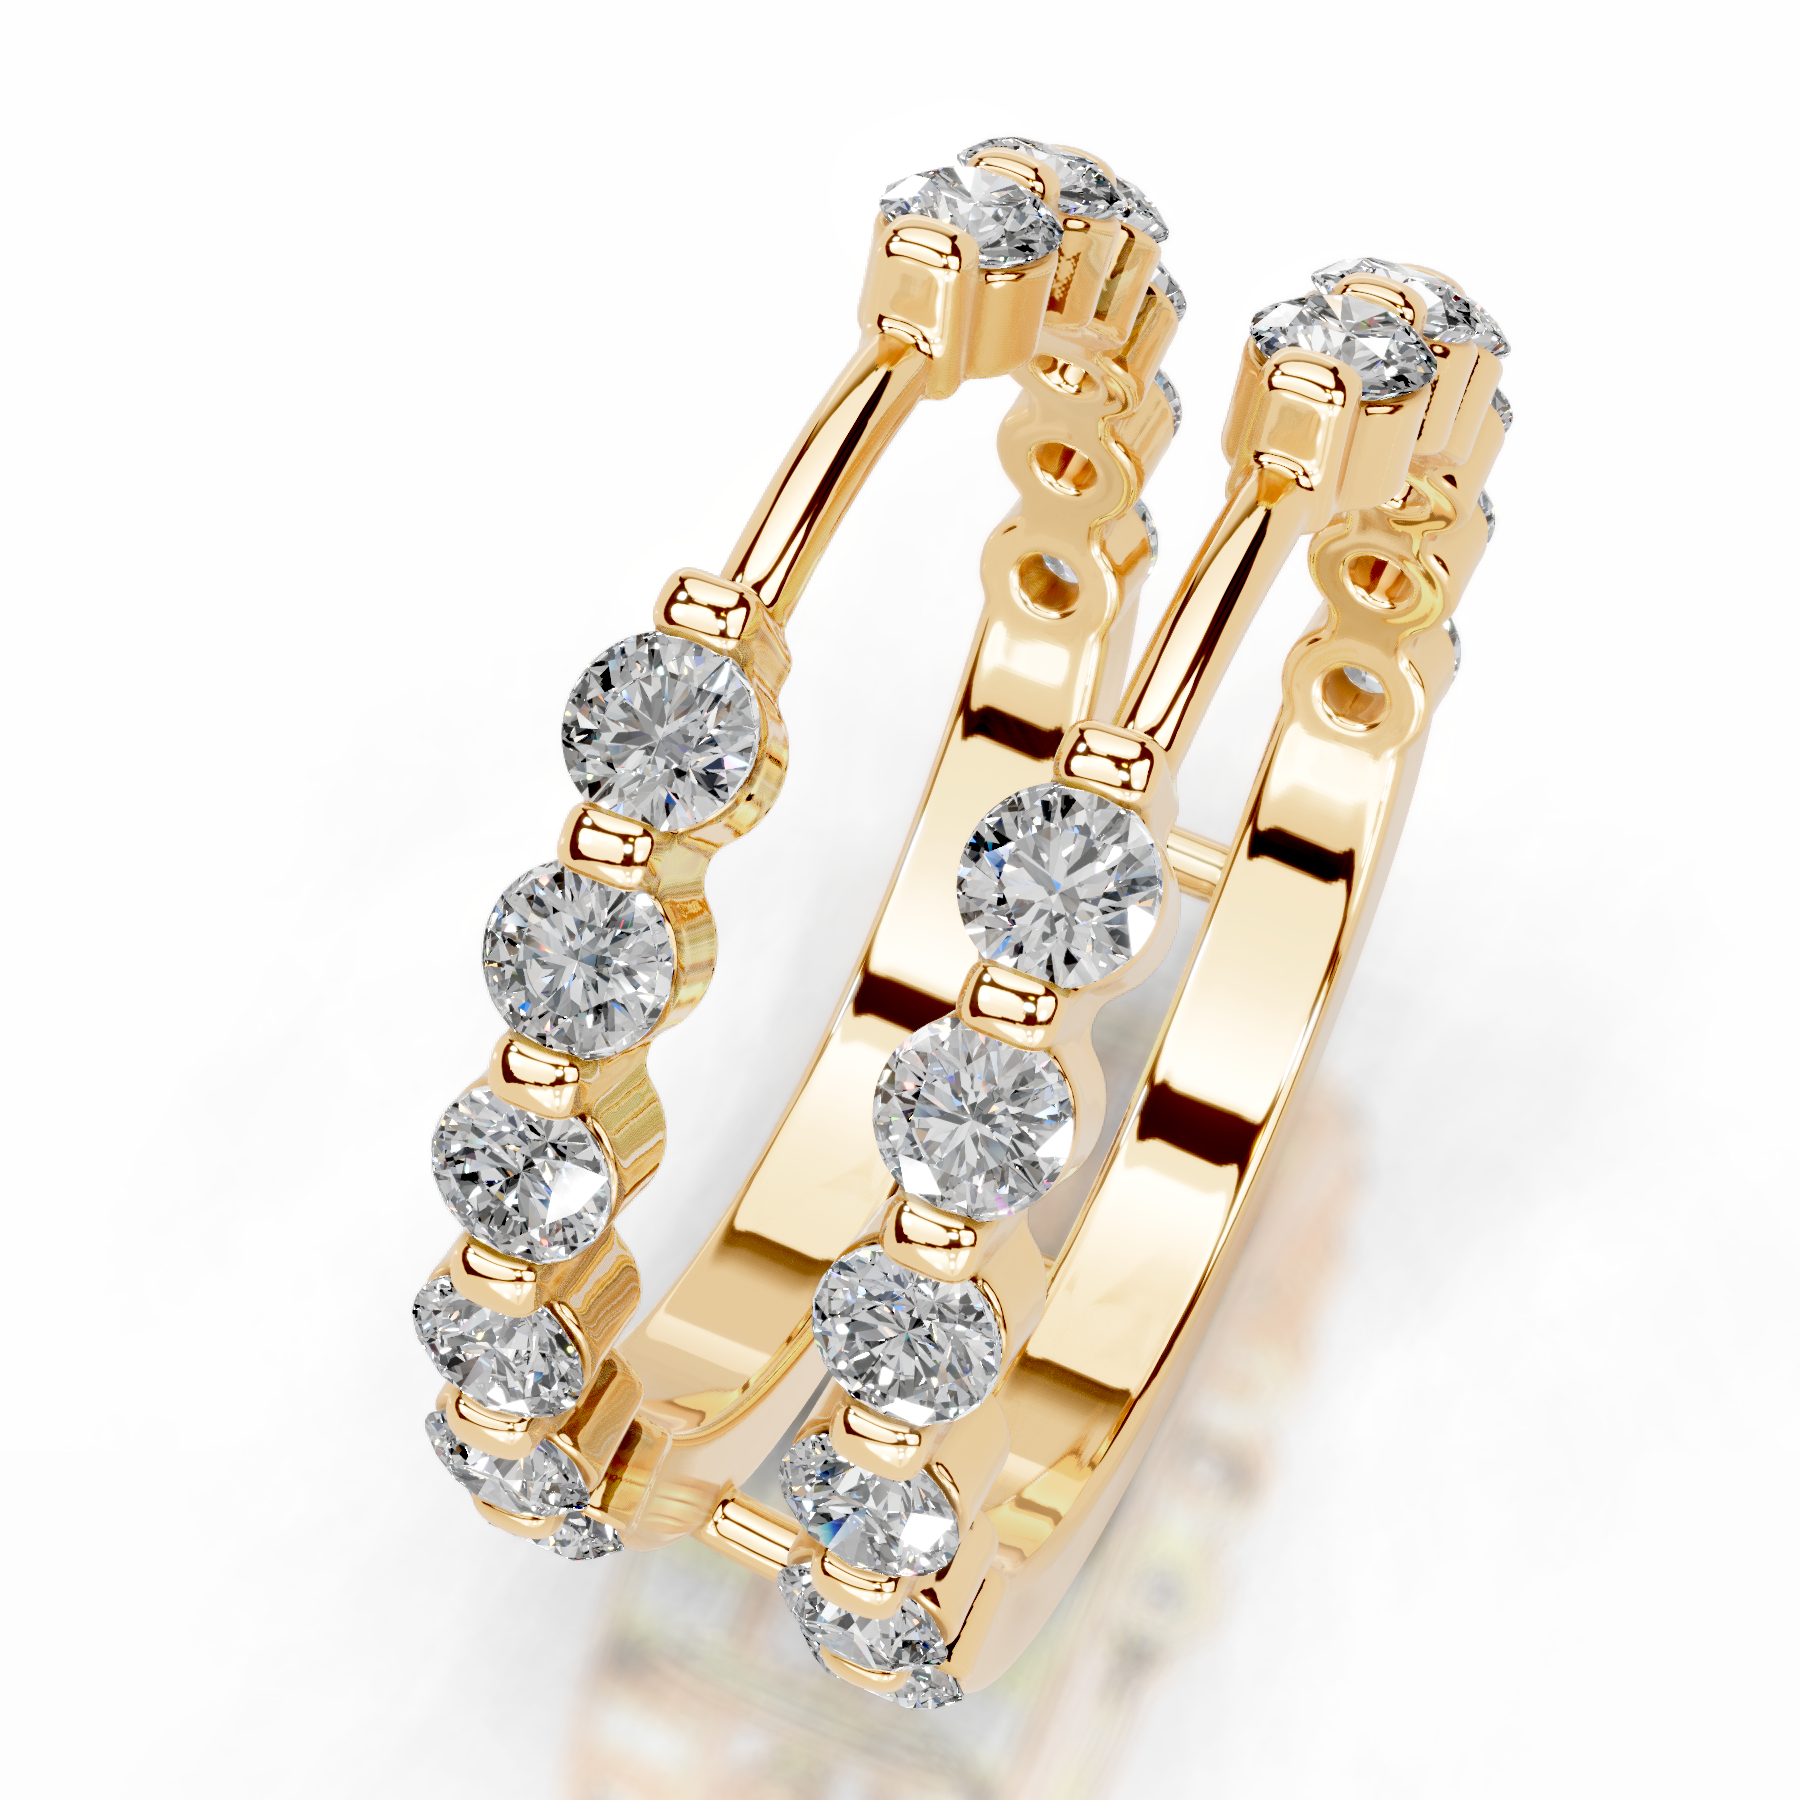 Ashley Diamond Wedding Ring   (1.25 Carat) -18K Yellow Gold